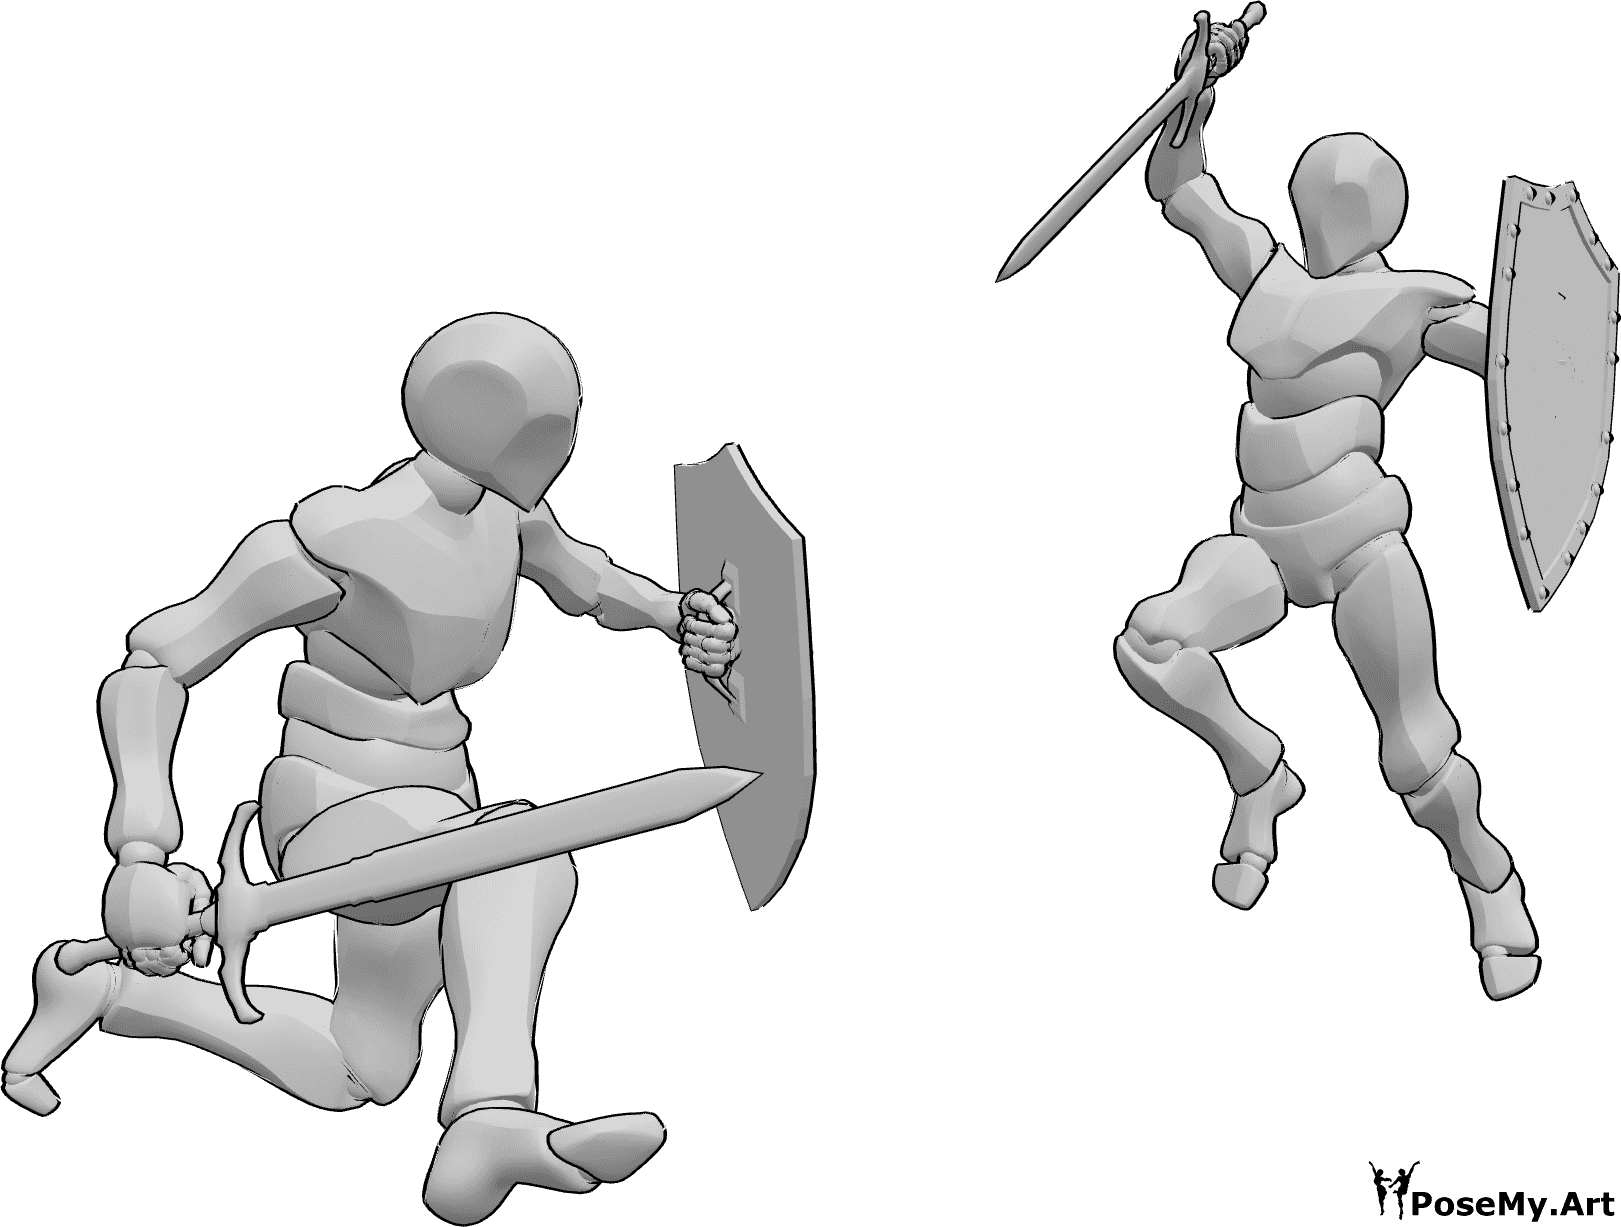 Référence des poses- Pose de combat à l'épée et au bouclier - Deux hommes se battent, tenant des épées et des boucliers, et prennent la pose d'attaque